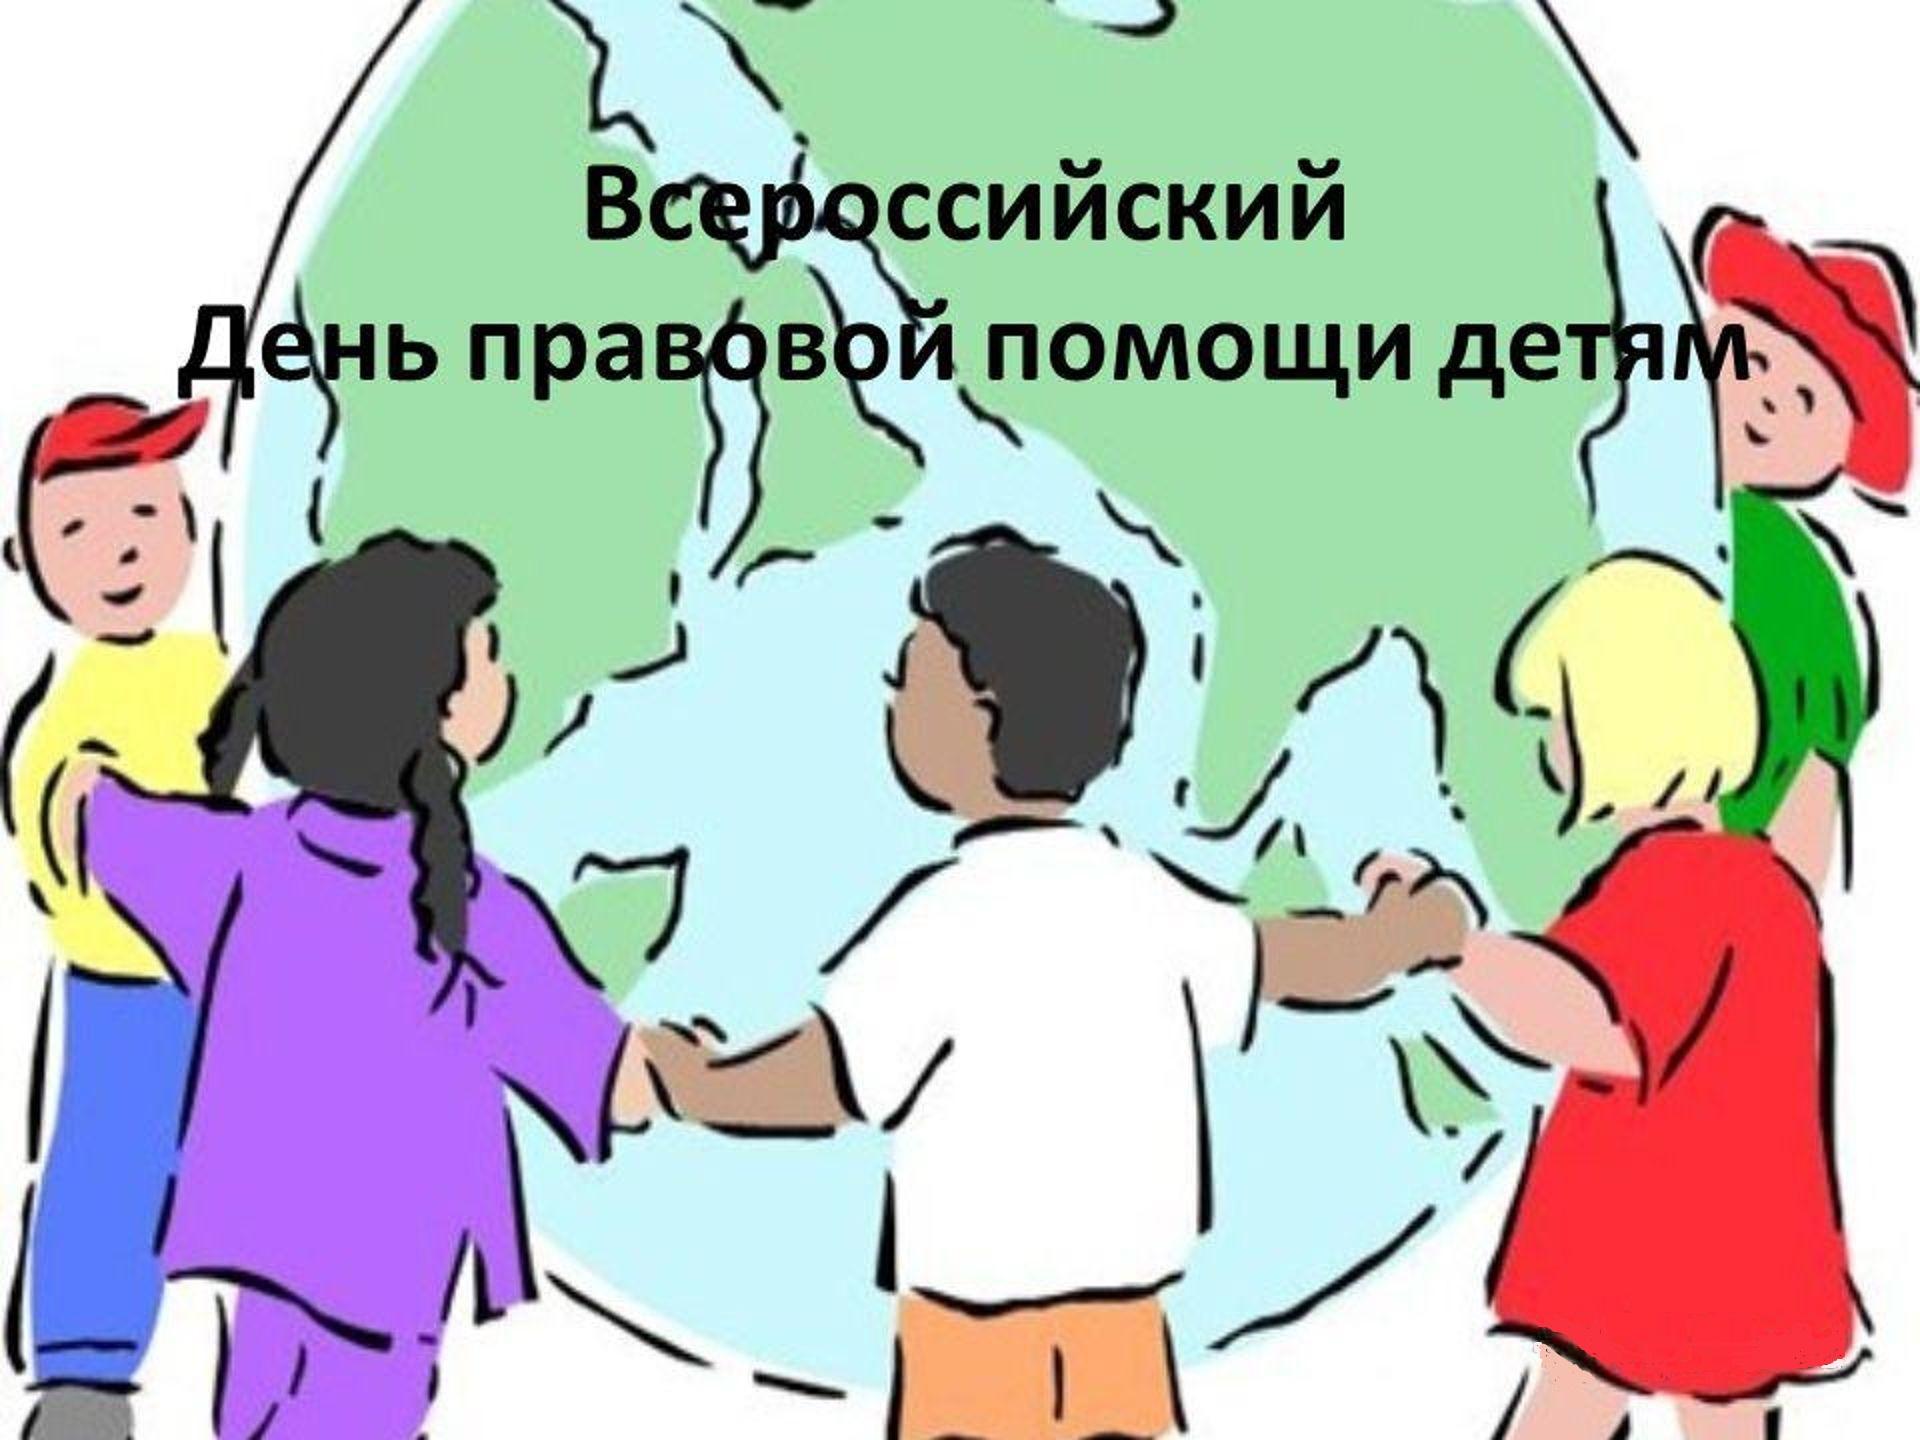 Всероссийский день правовой защиты детей